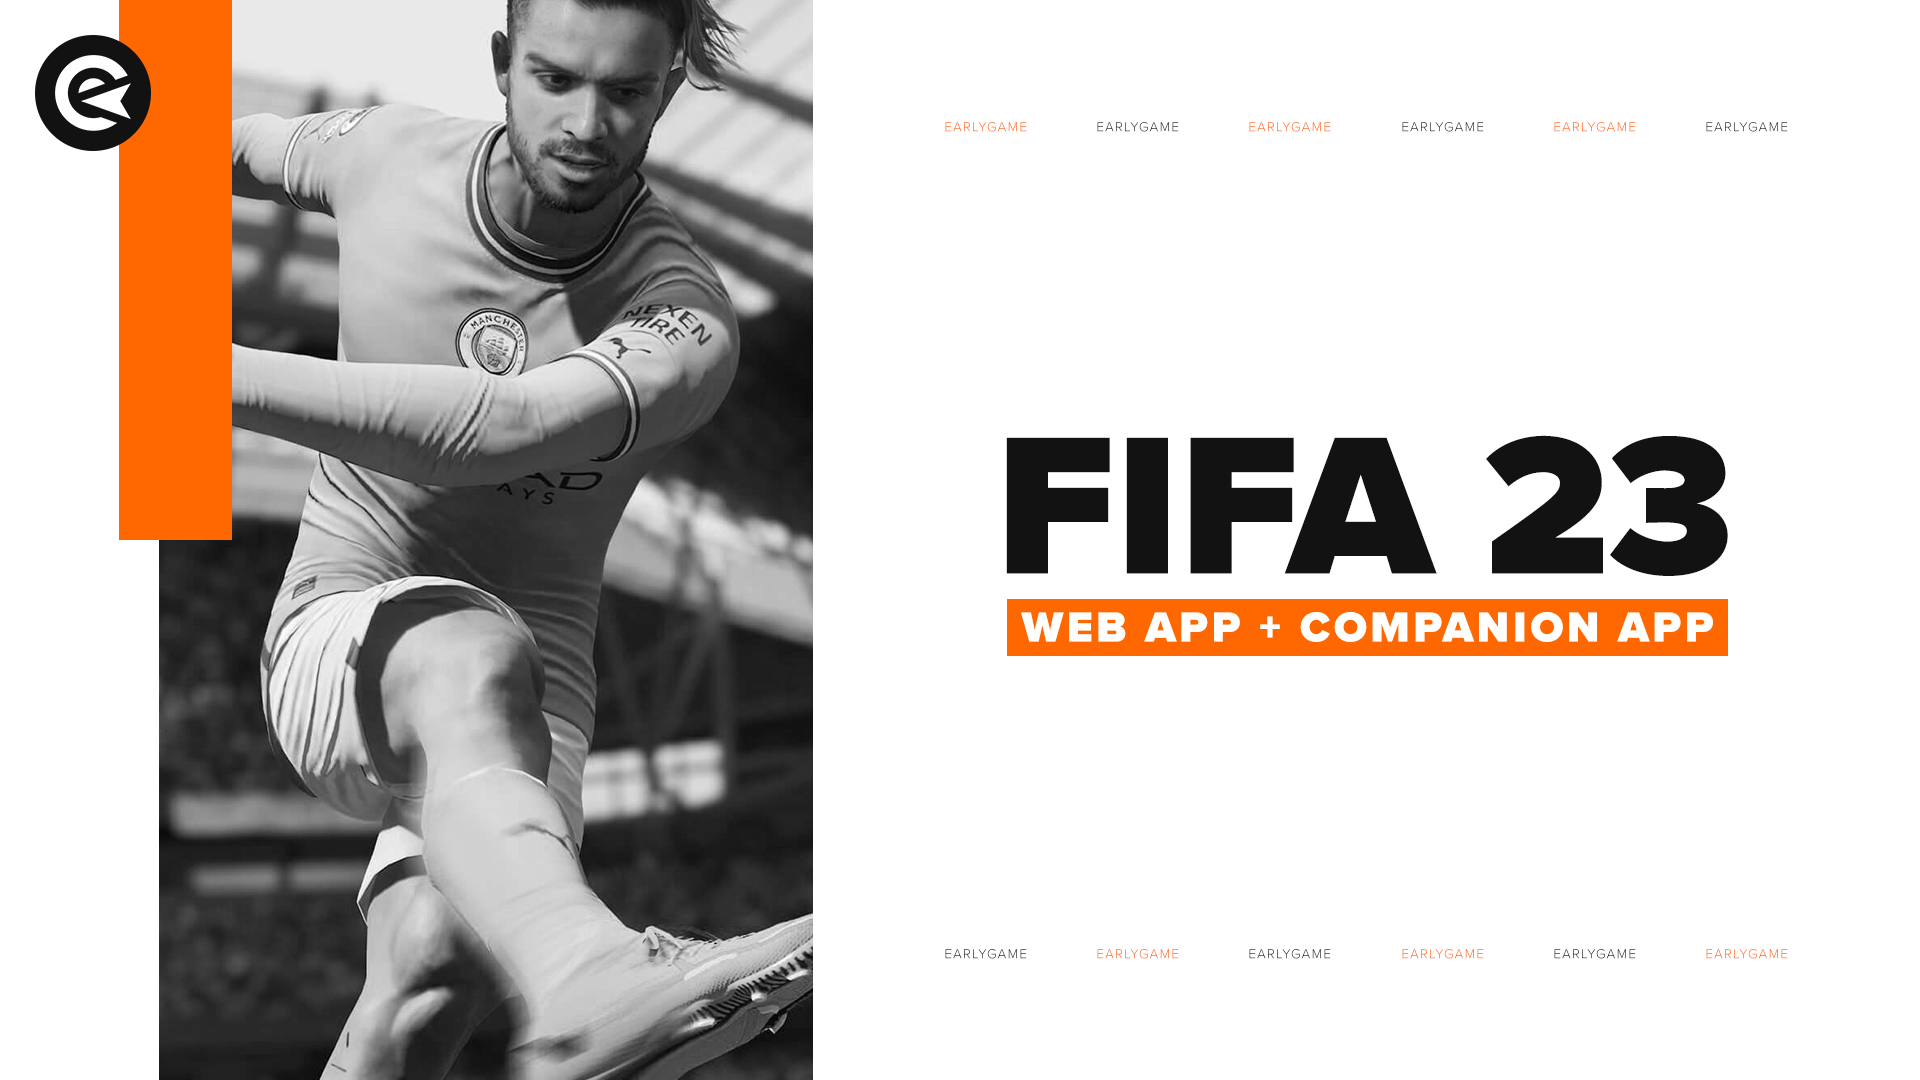 ⏩️CORRE!! COMO ENTRAR A LA WEB APP DE FIFA 23 DE LOS PRIMEROS!! #Fifa23  #shorts #fut23 #webapp 